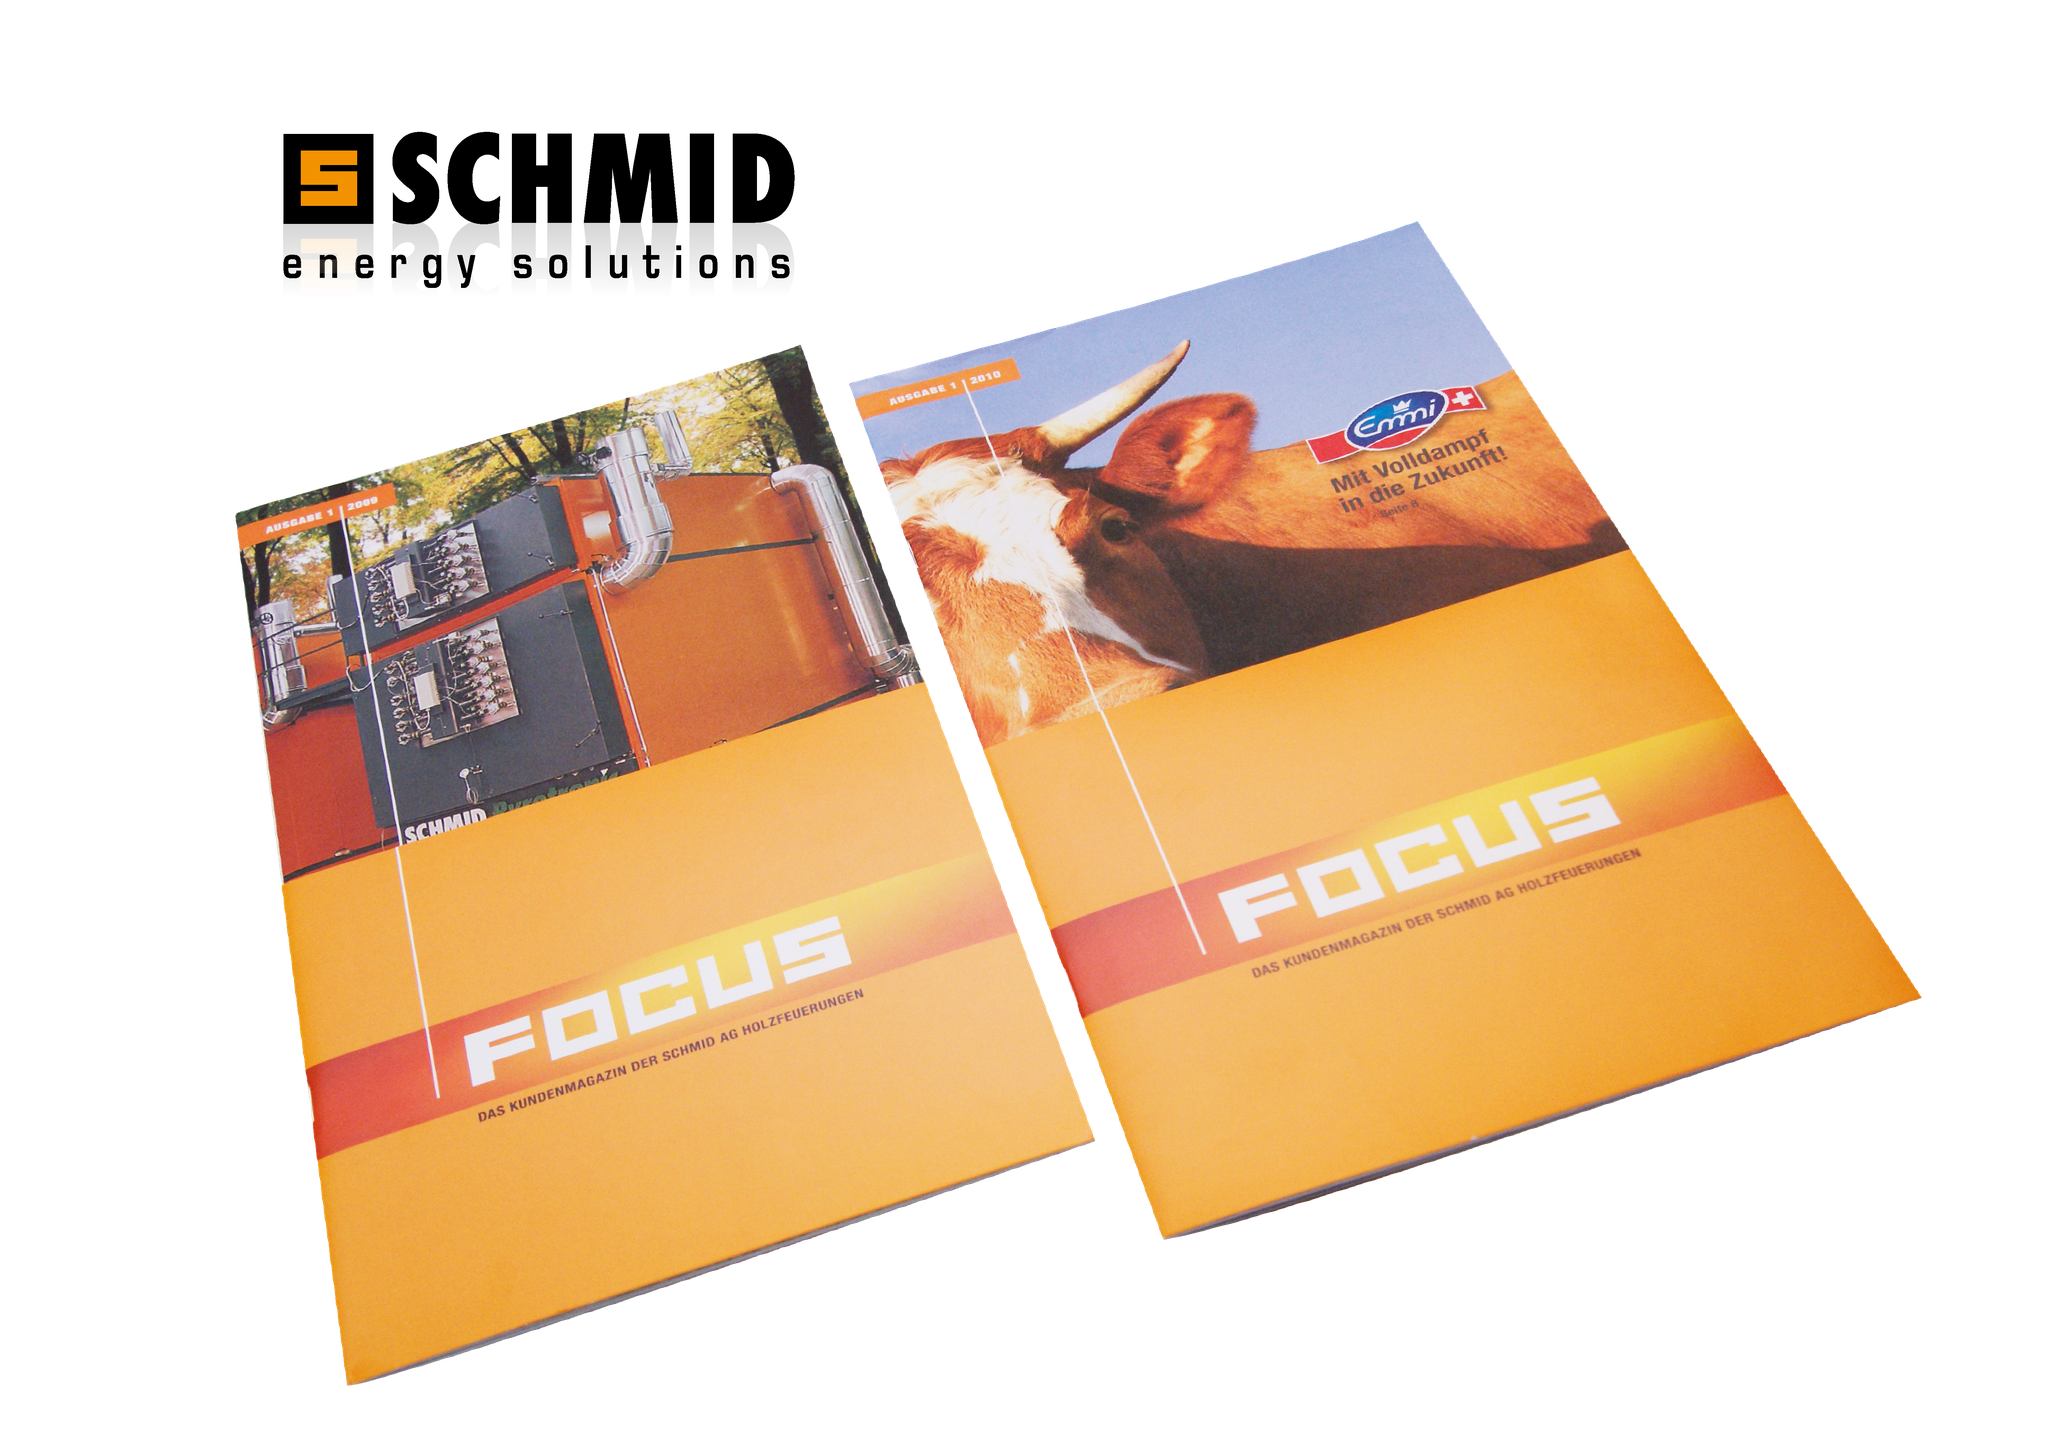 Integrierte Kommunikation für Schmid AG, energy solutions. Das Kundenmagazin FOCUS überzeugt mit inhaltlichem Konzept und gepflegter Gestaltung im schlanken Postversand-Format.